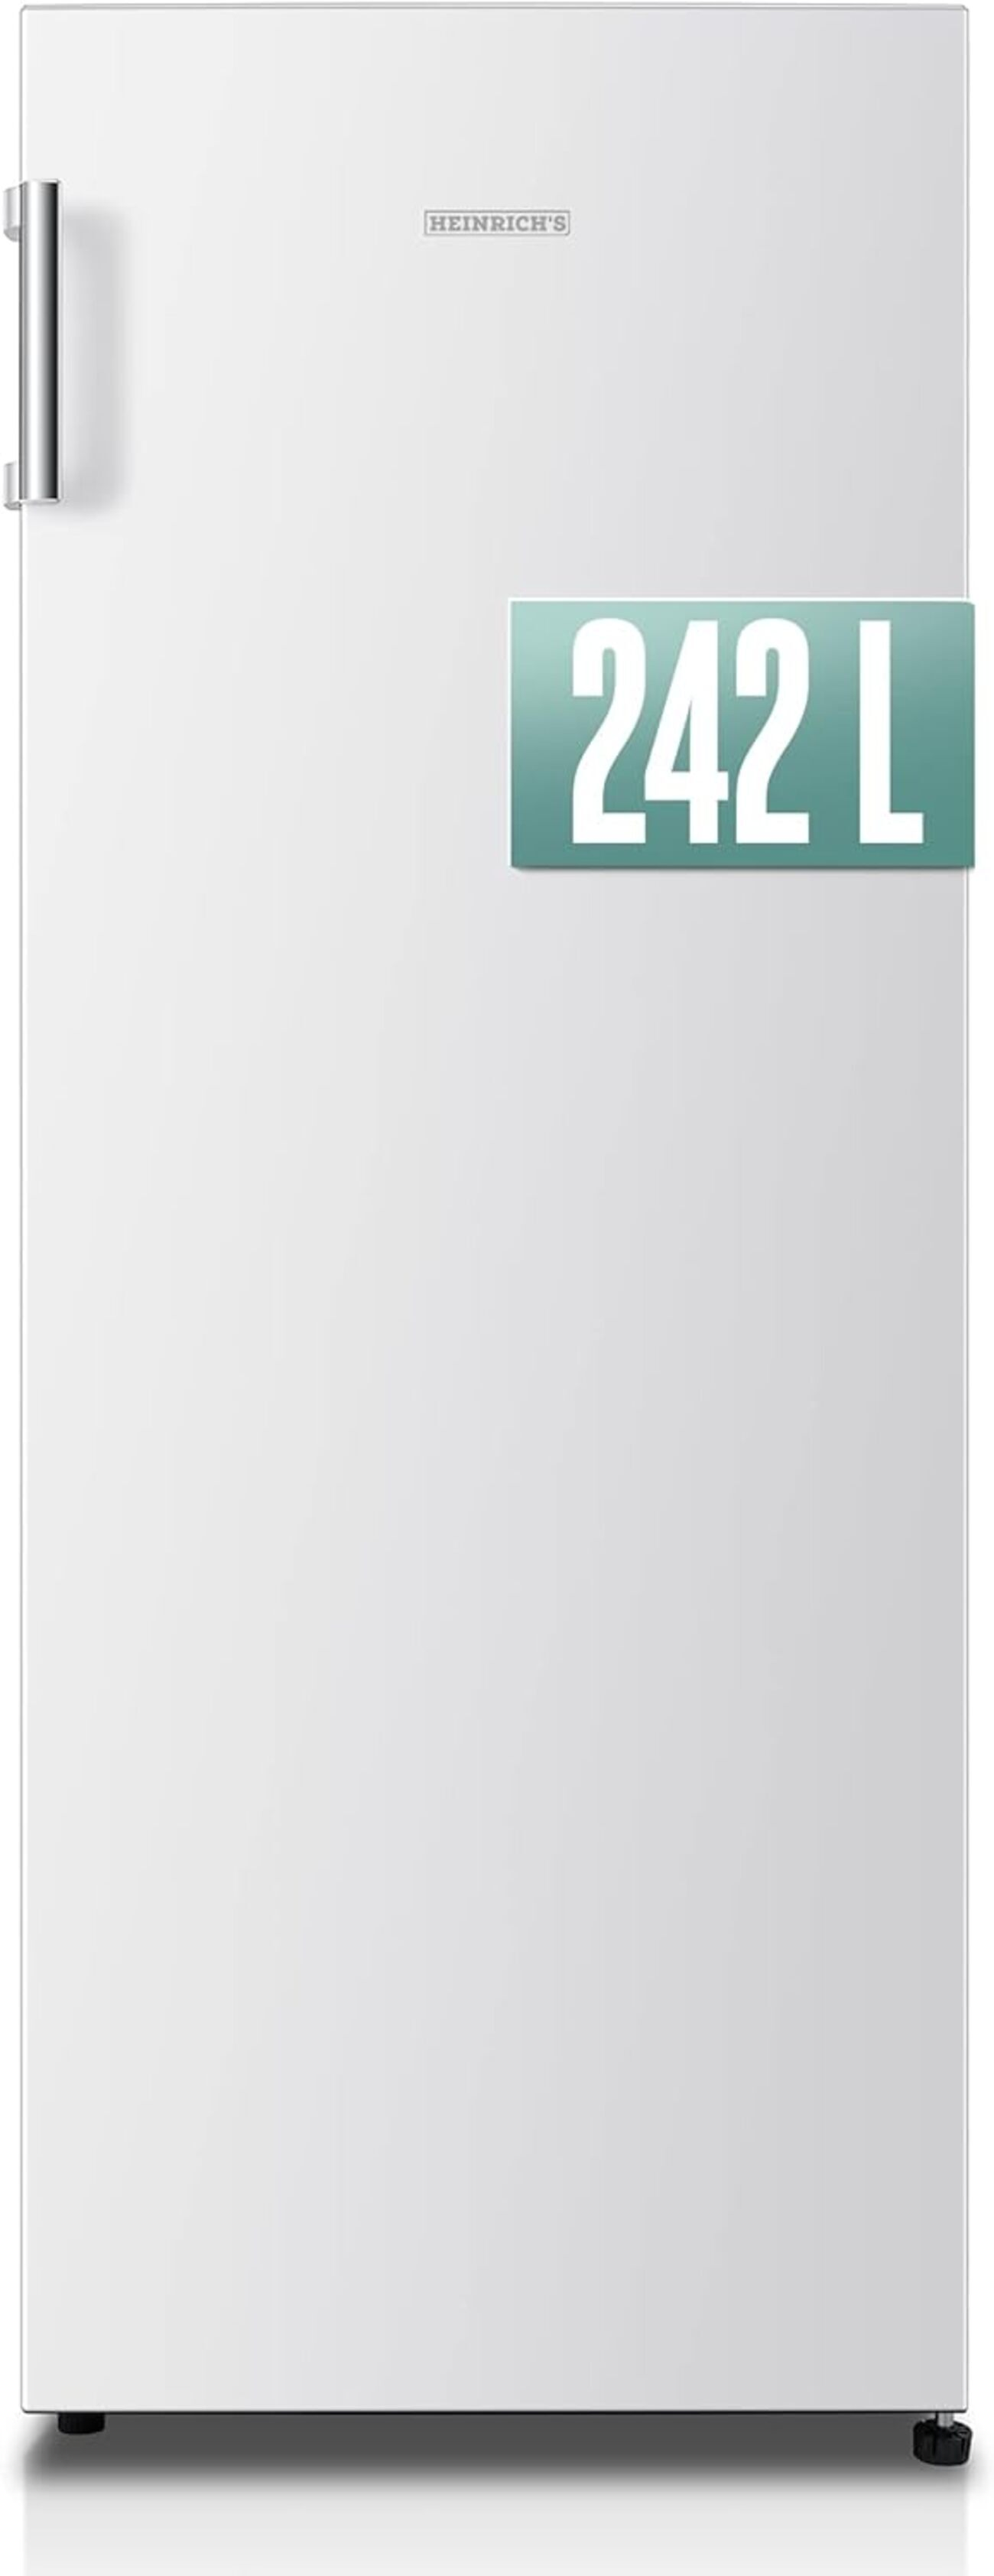 HEINRICHS HEINRICHS 242L, 143,4 cm freistehender LED-Beleuchtung, hoch, Vollraumkühlschrank, Kühlschrank (E, Kühlschrank weiss)